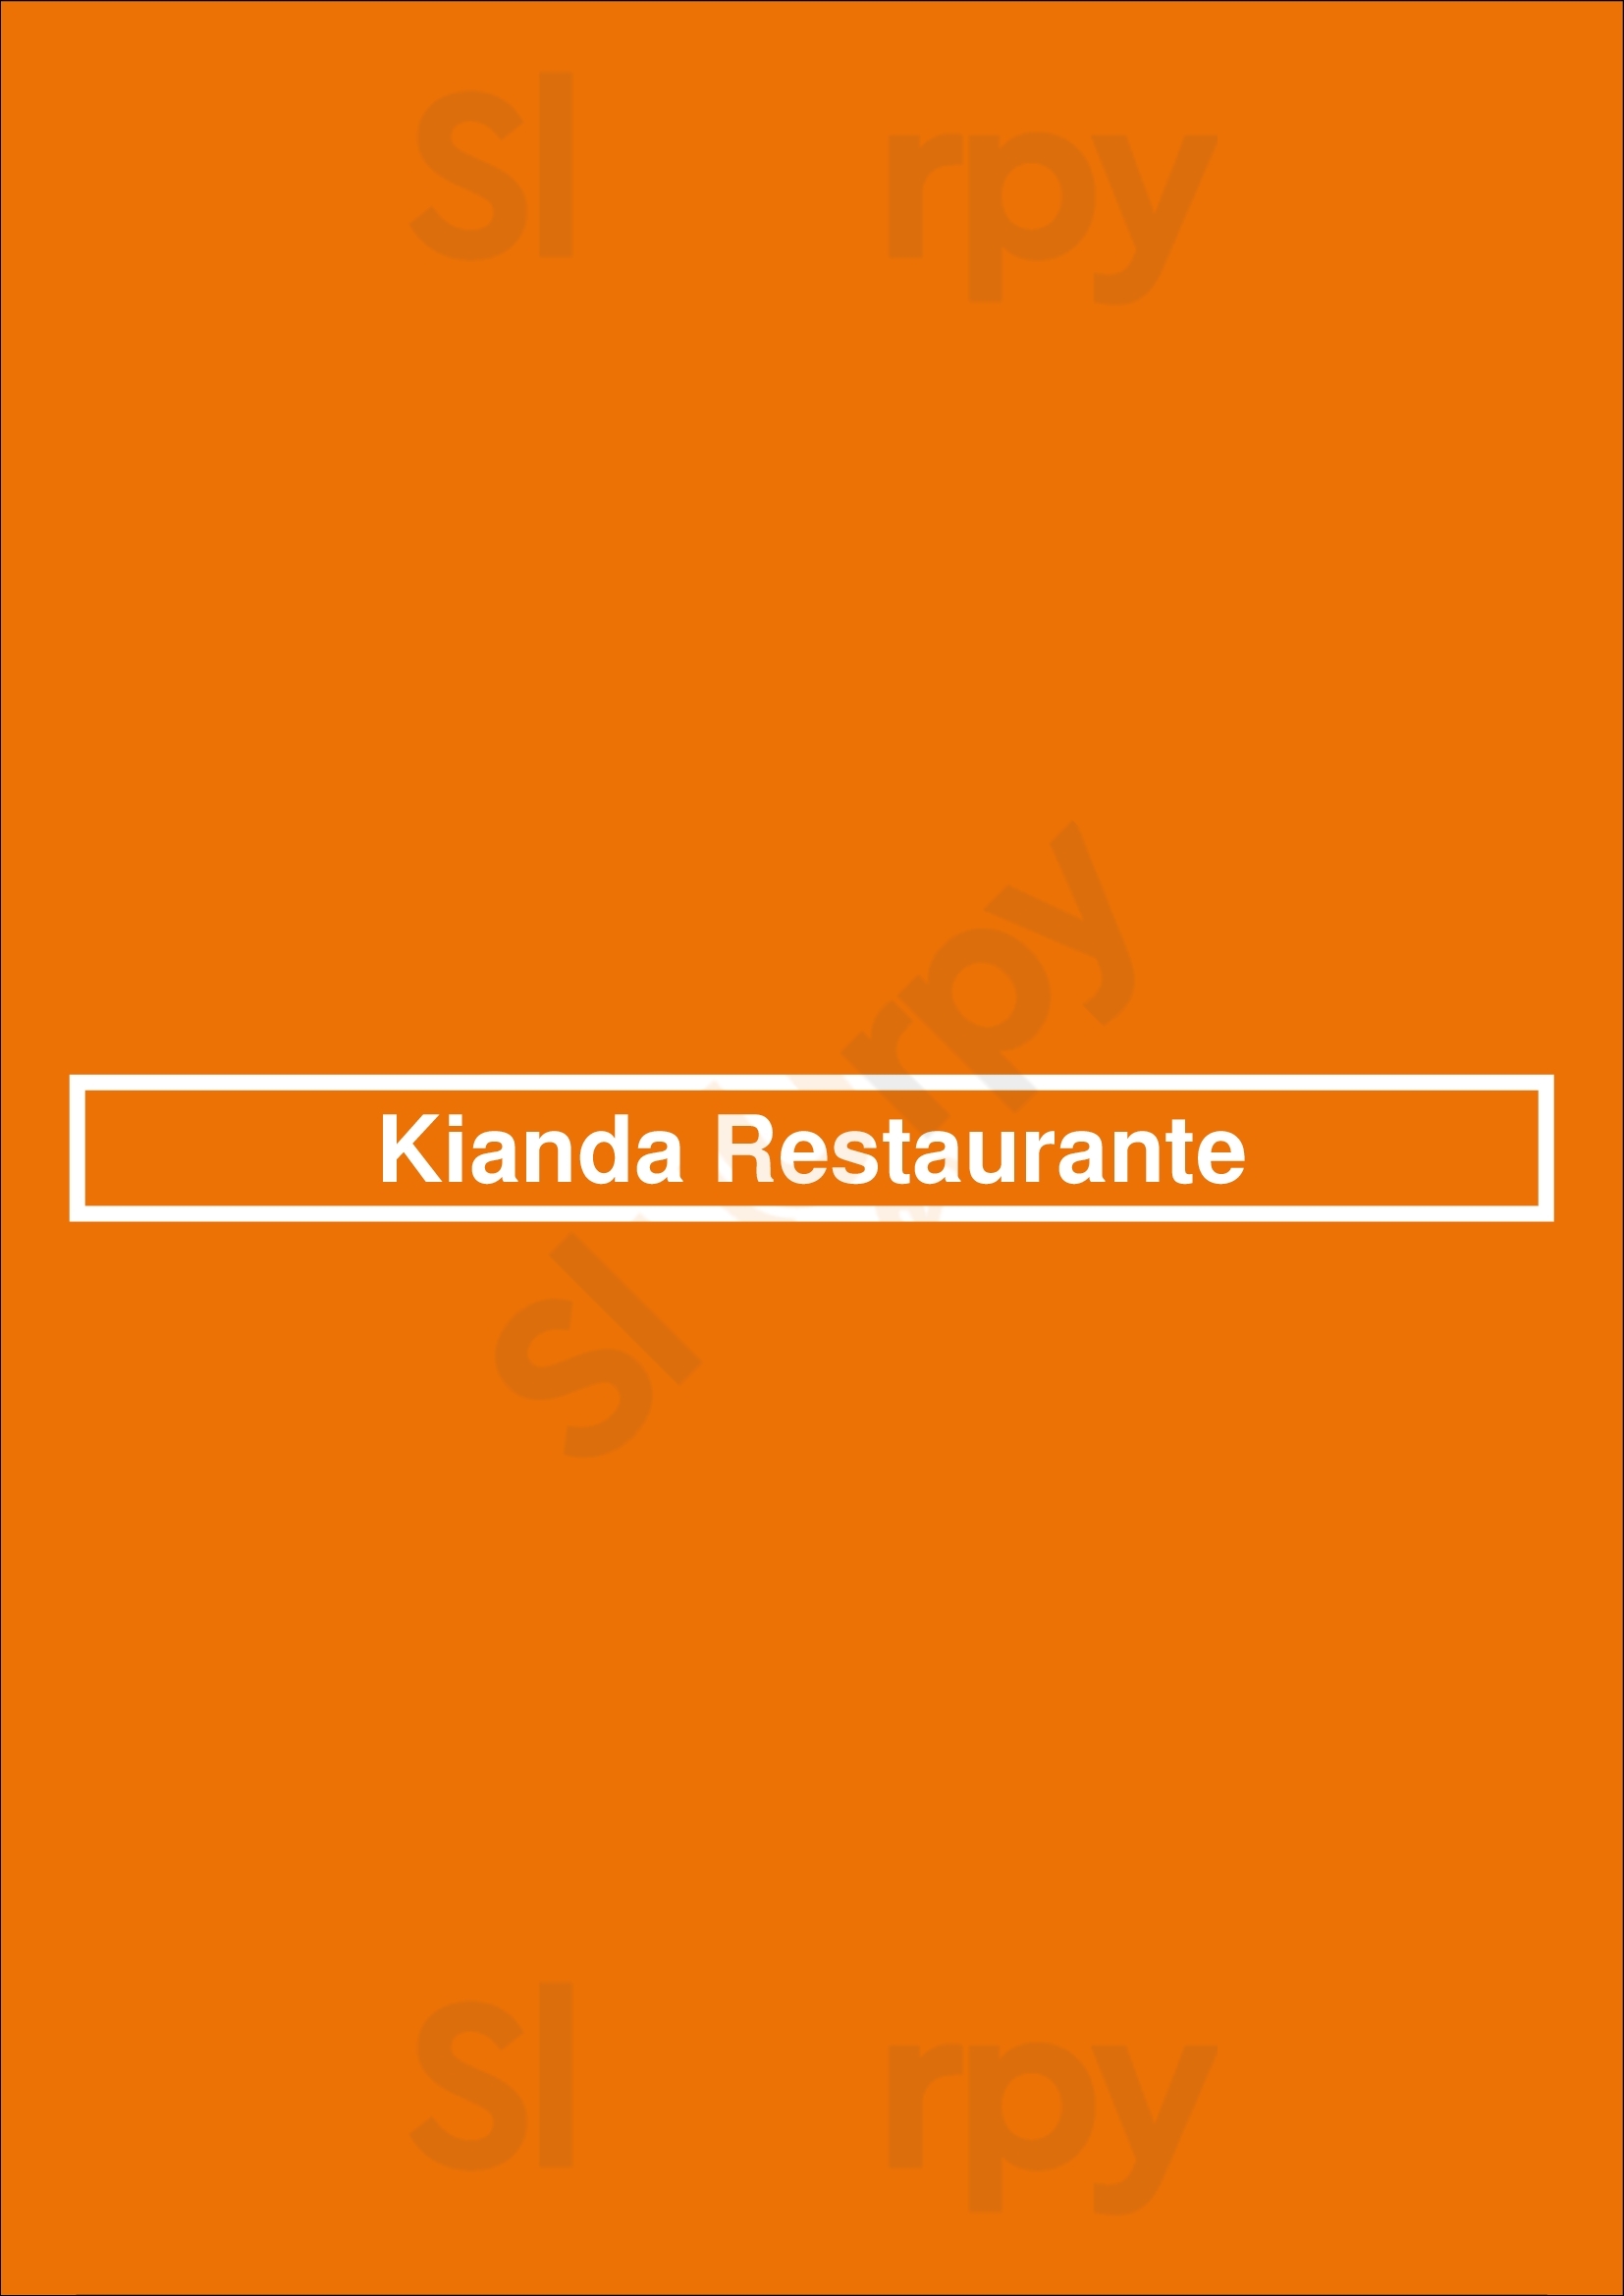 Kianda Restaurante Braga Menu - 1